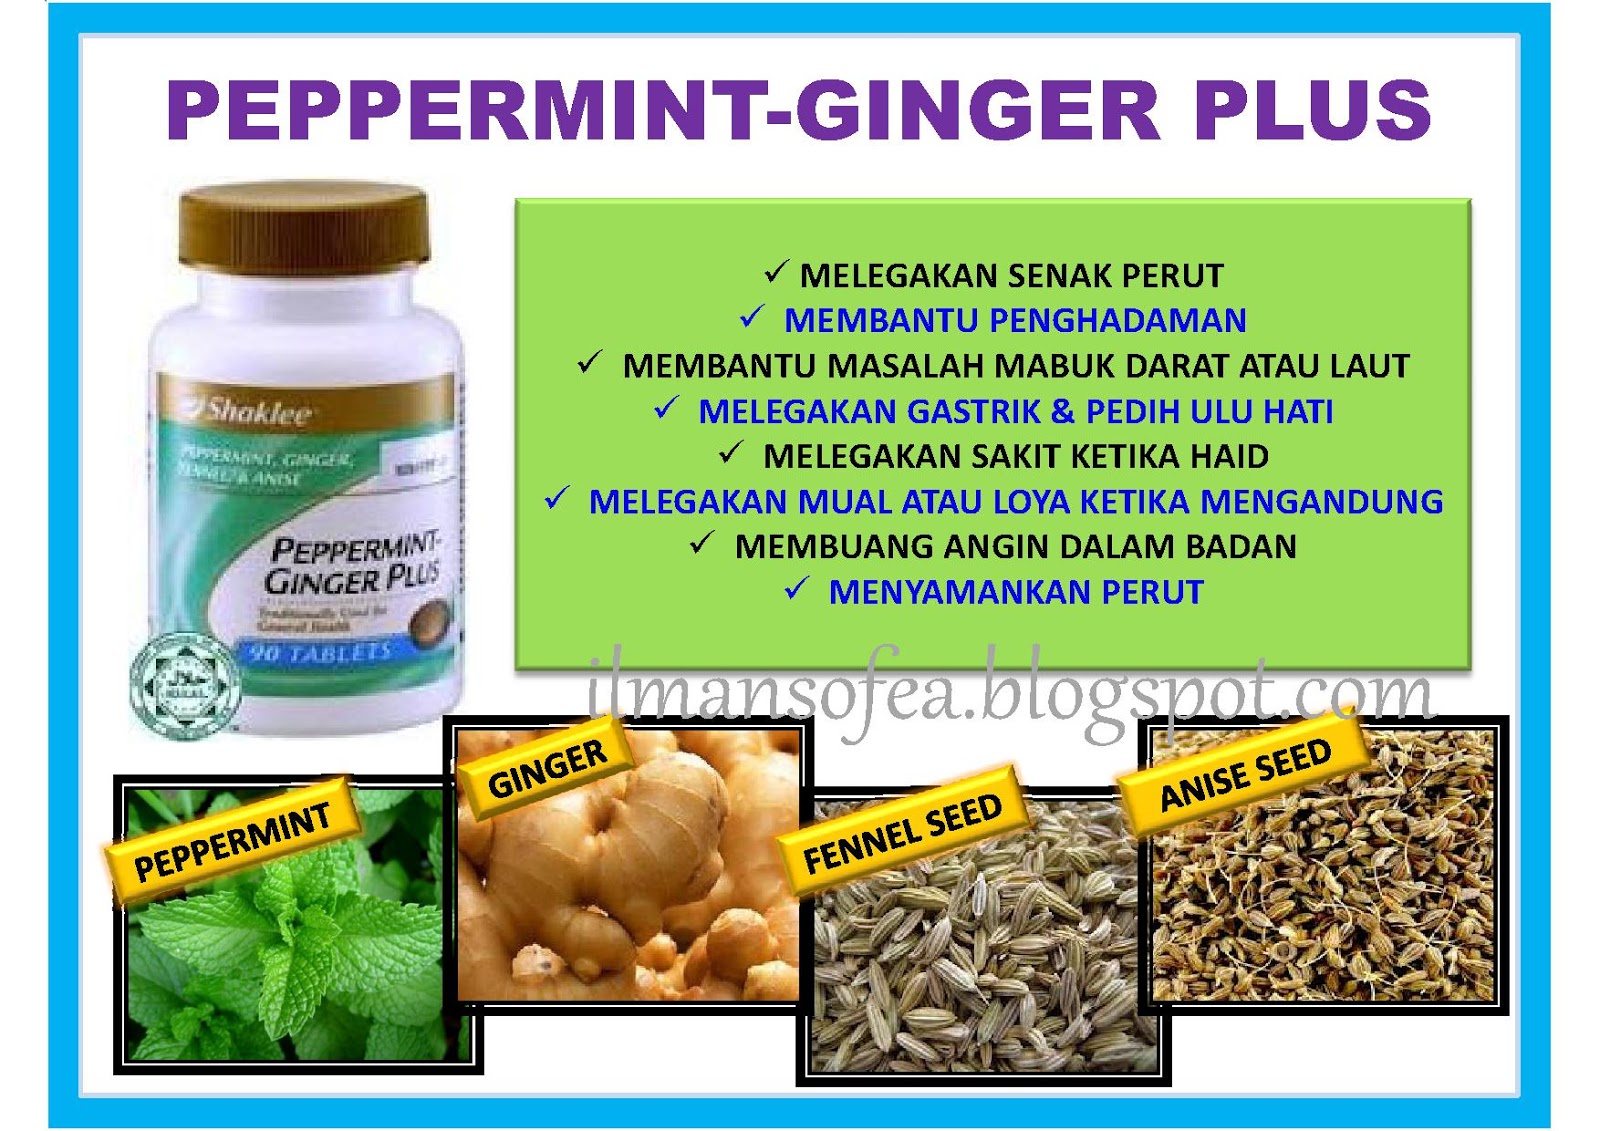 Harapan impian realiti : Peppermint-Ginger Plus